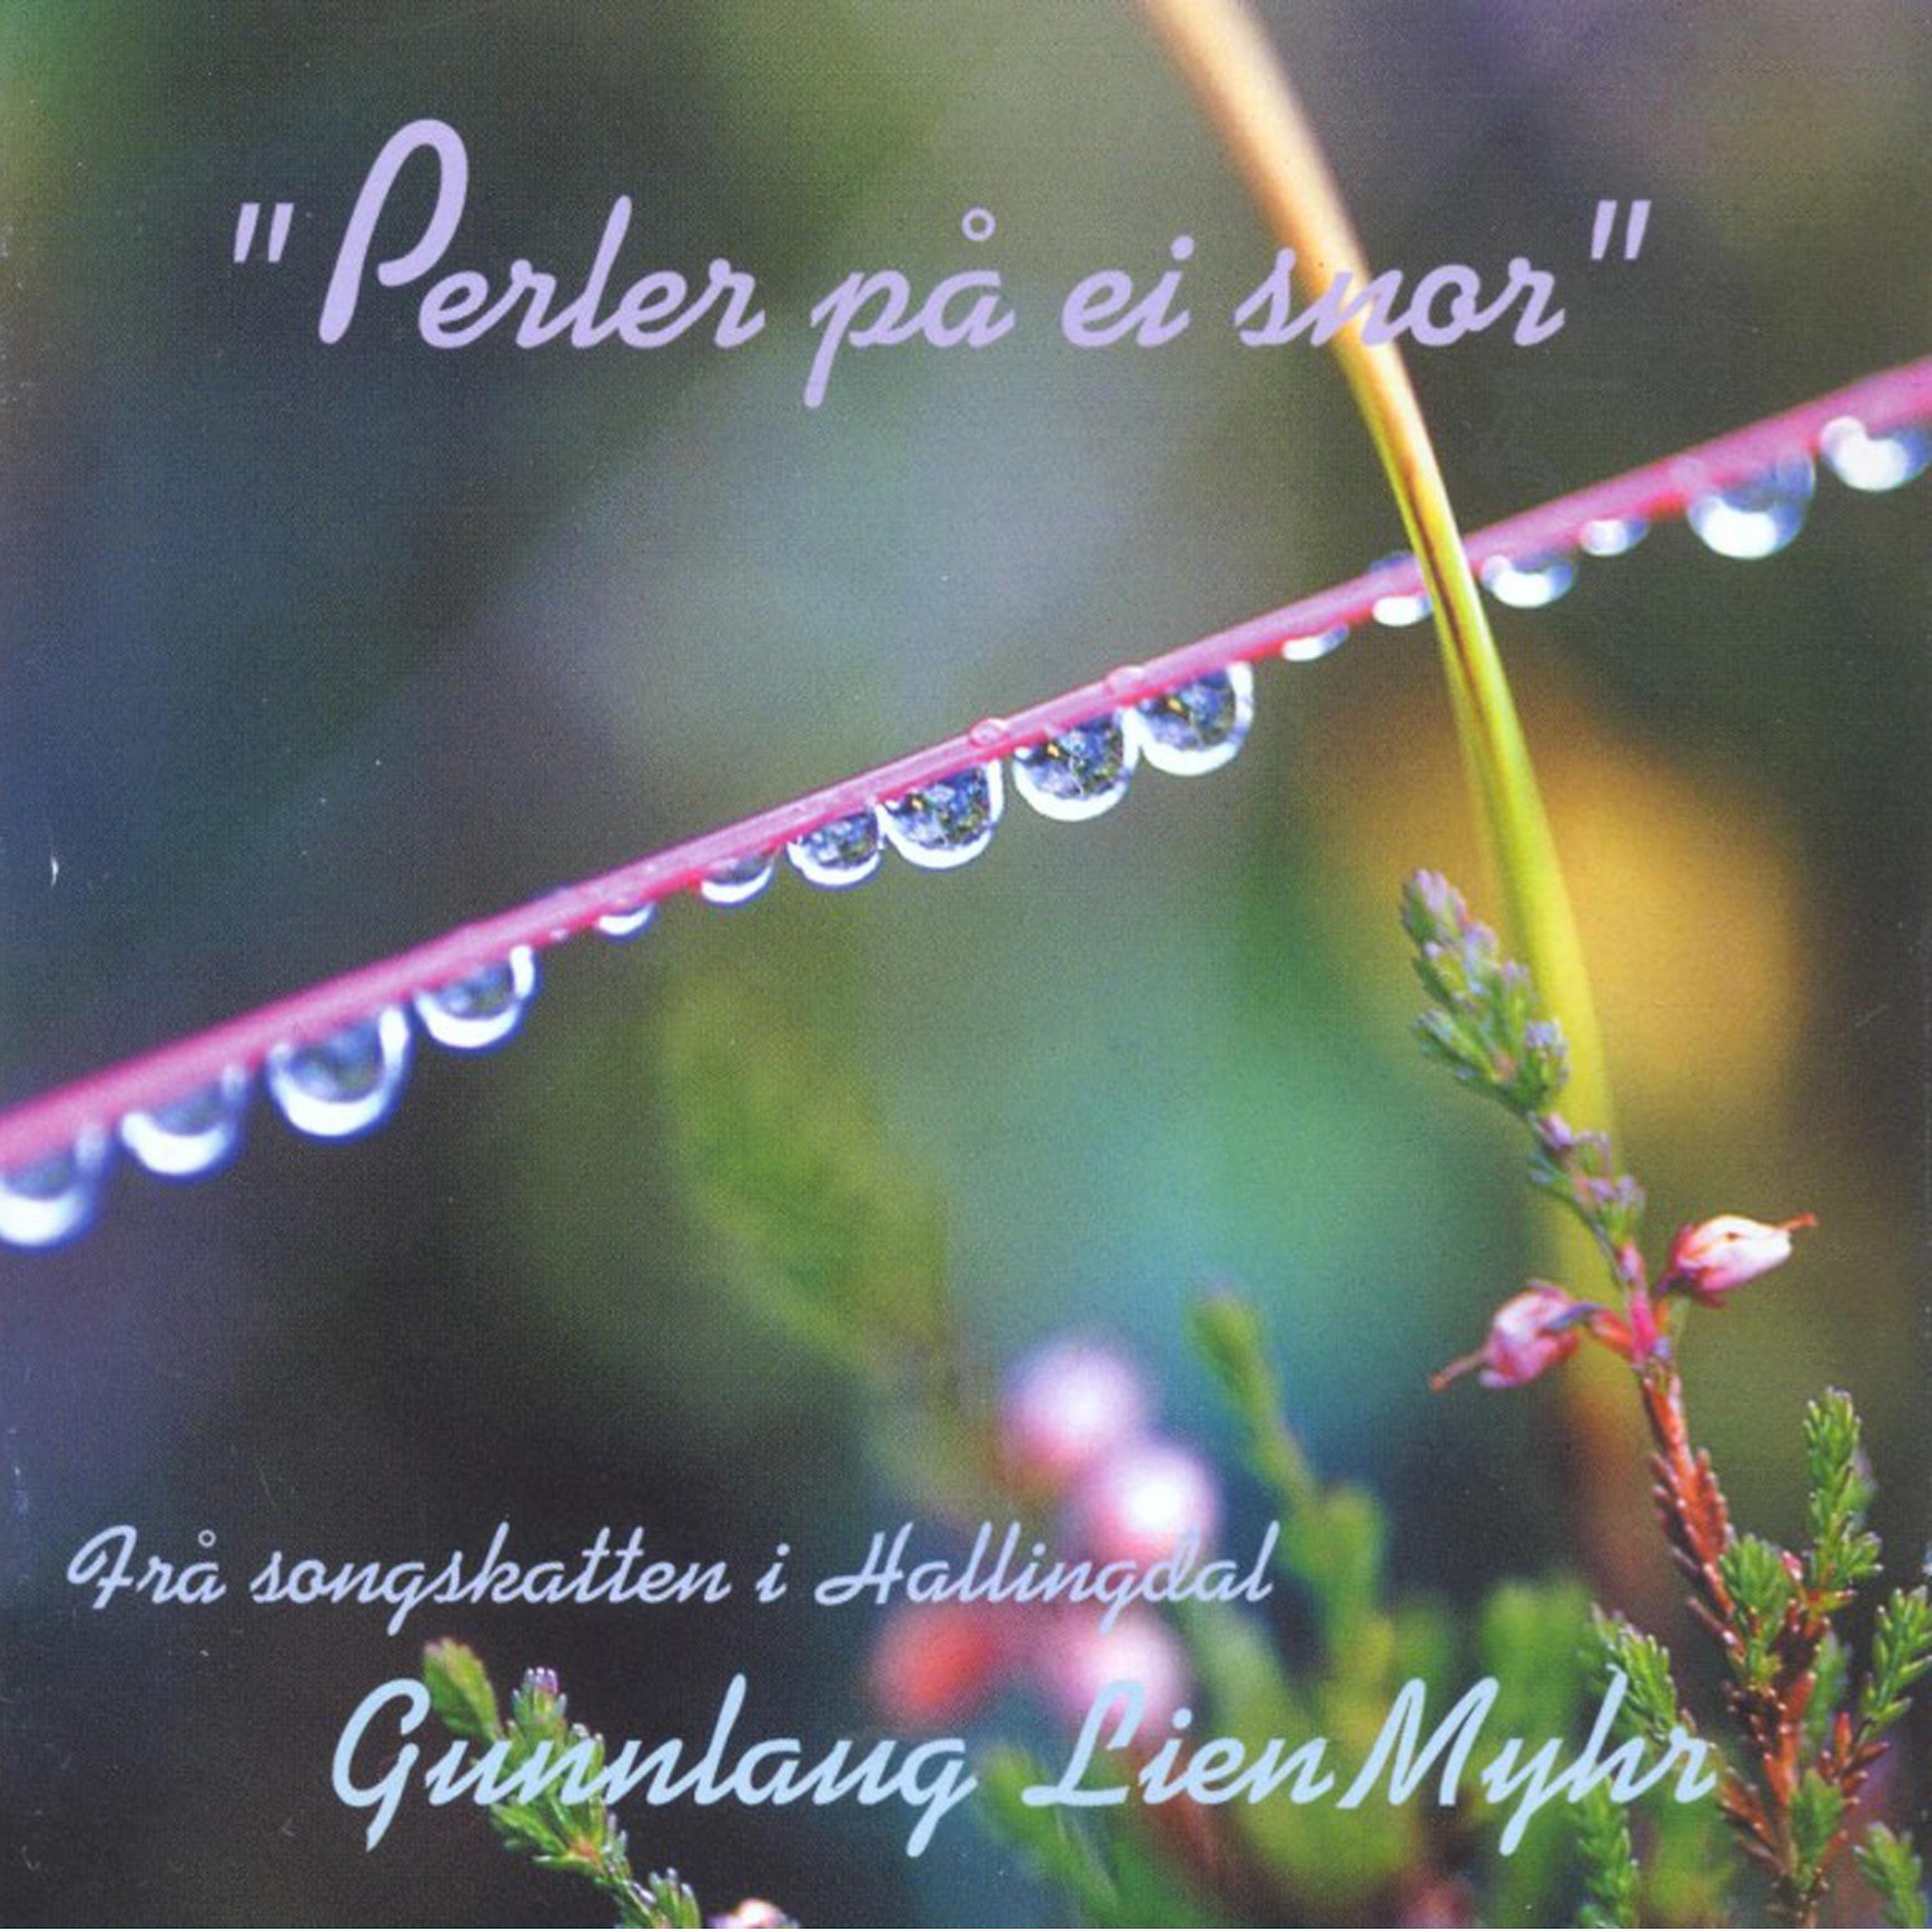 Постер альбома "Perler på ei snor" Frå songskatten i Hallingdal